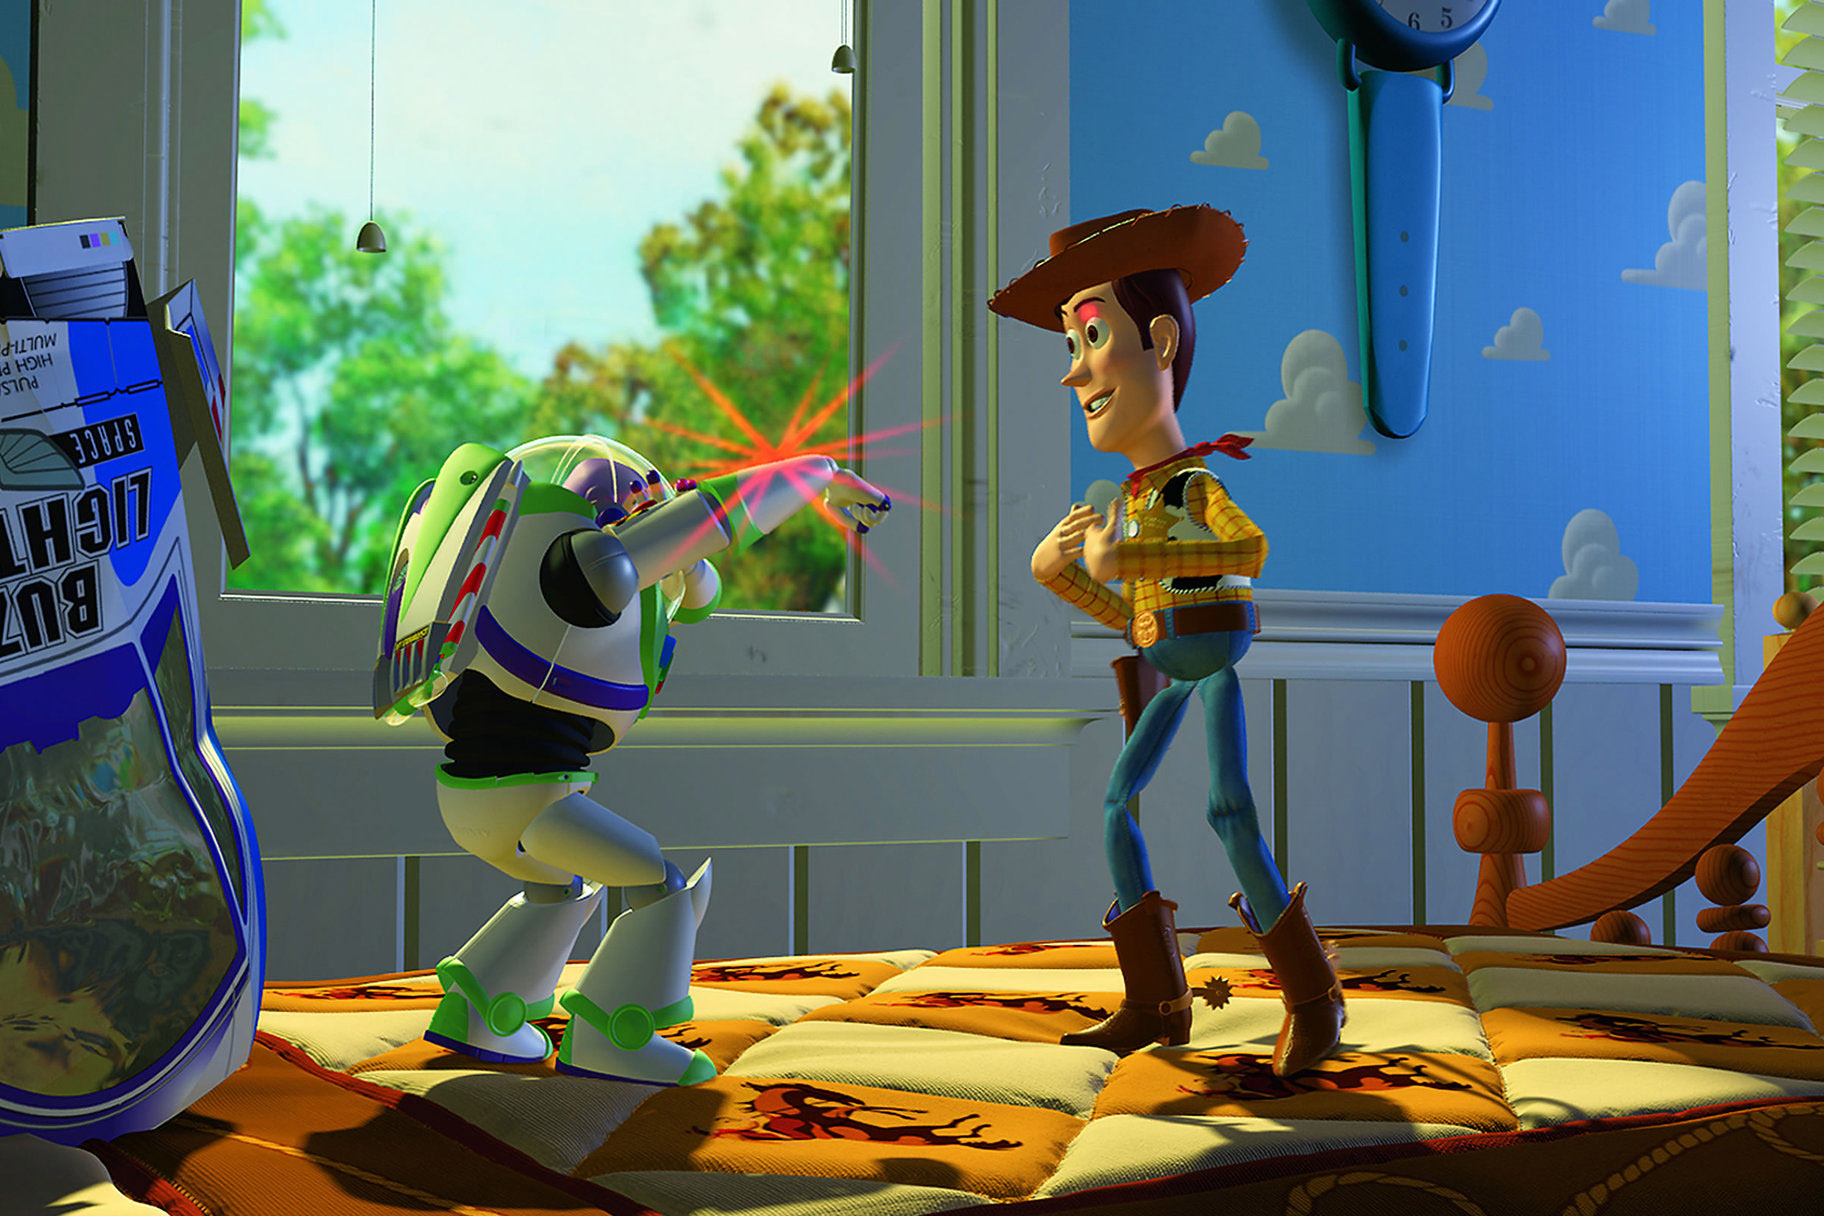 Buzz pisca seu laser de pulso para Woody em Toy Story (1995)